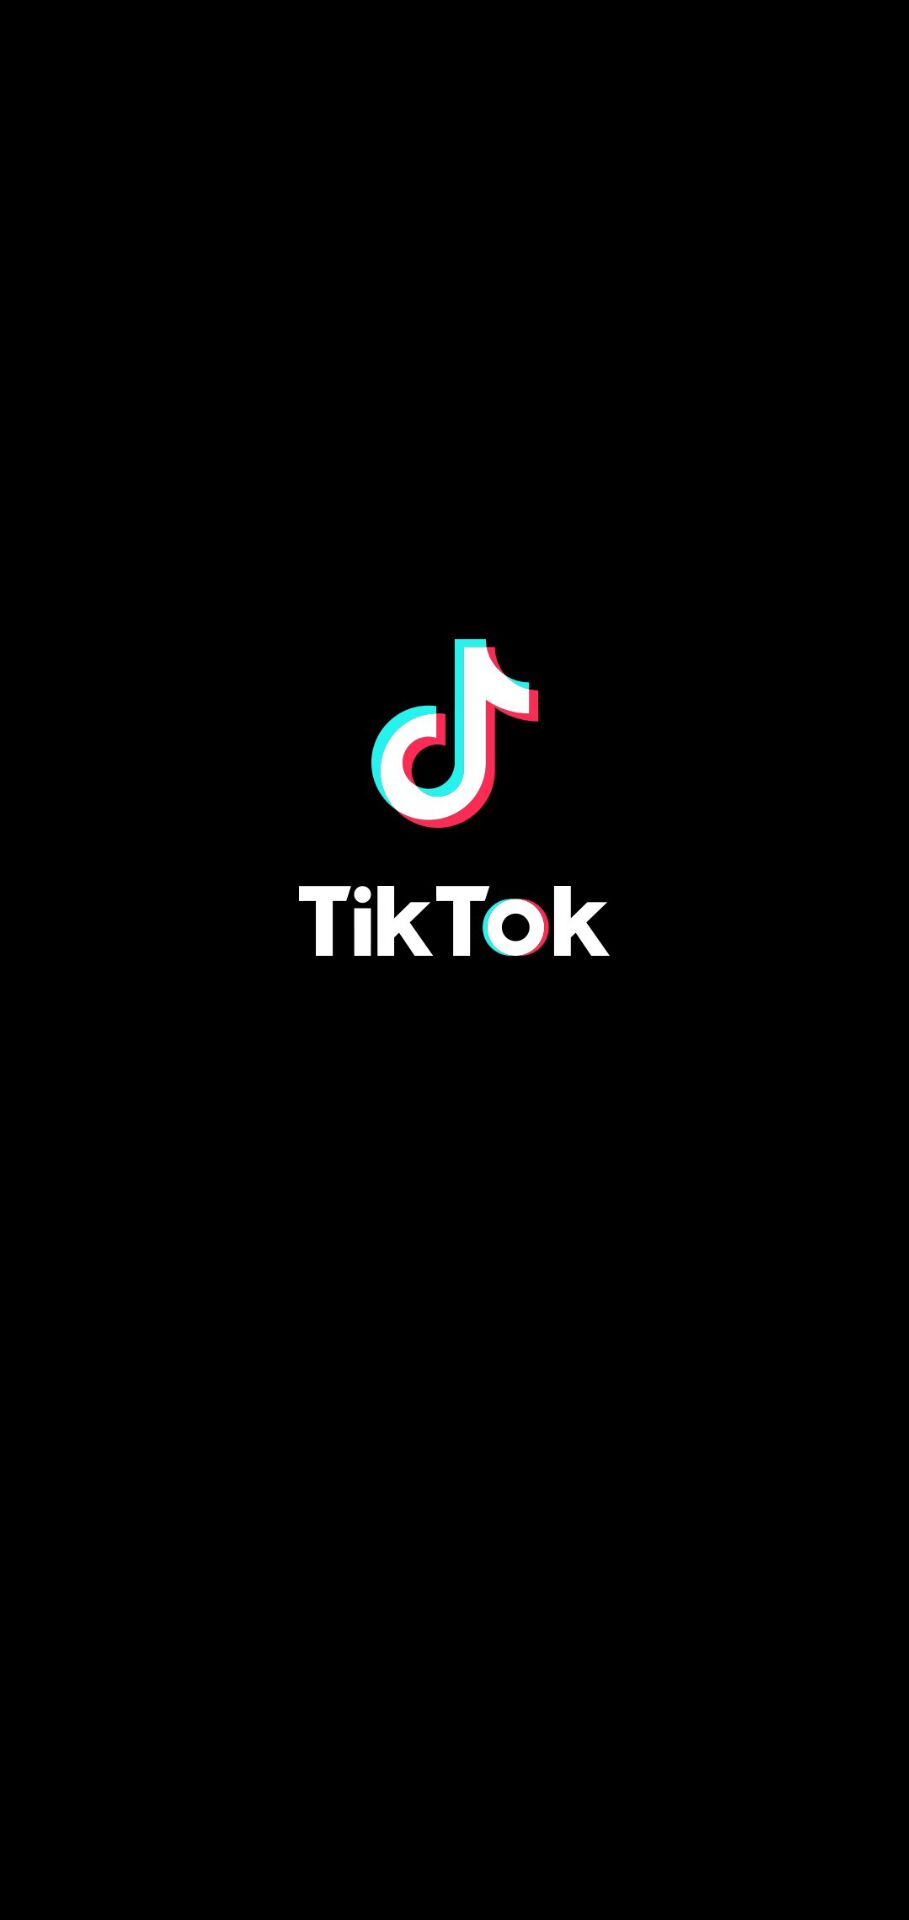 抖音国际版下载 TikTok抖音国外版(解除国家限制/无广告/无水印) v30.0.3 最新版-1